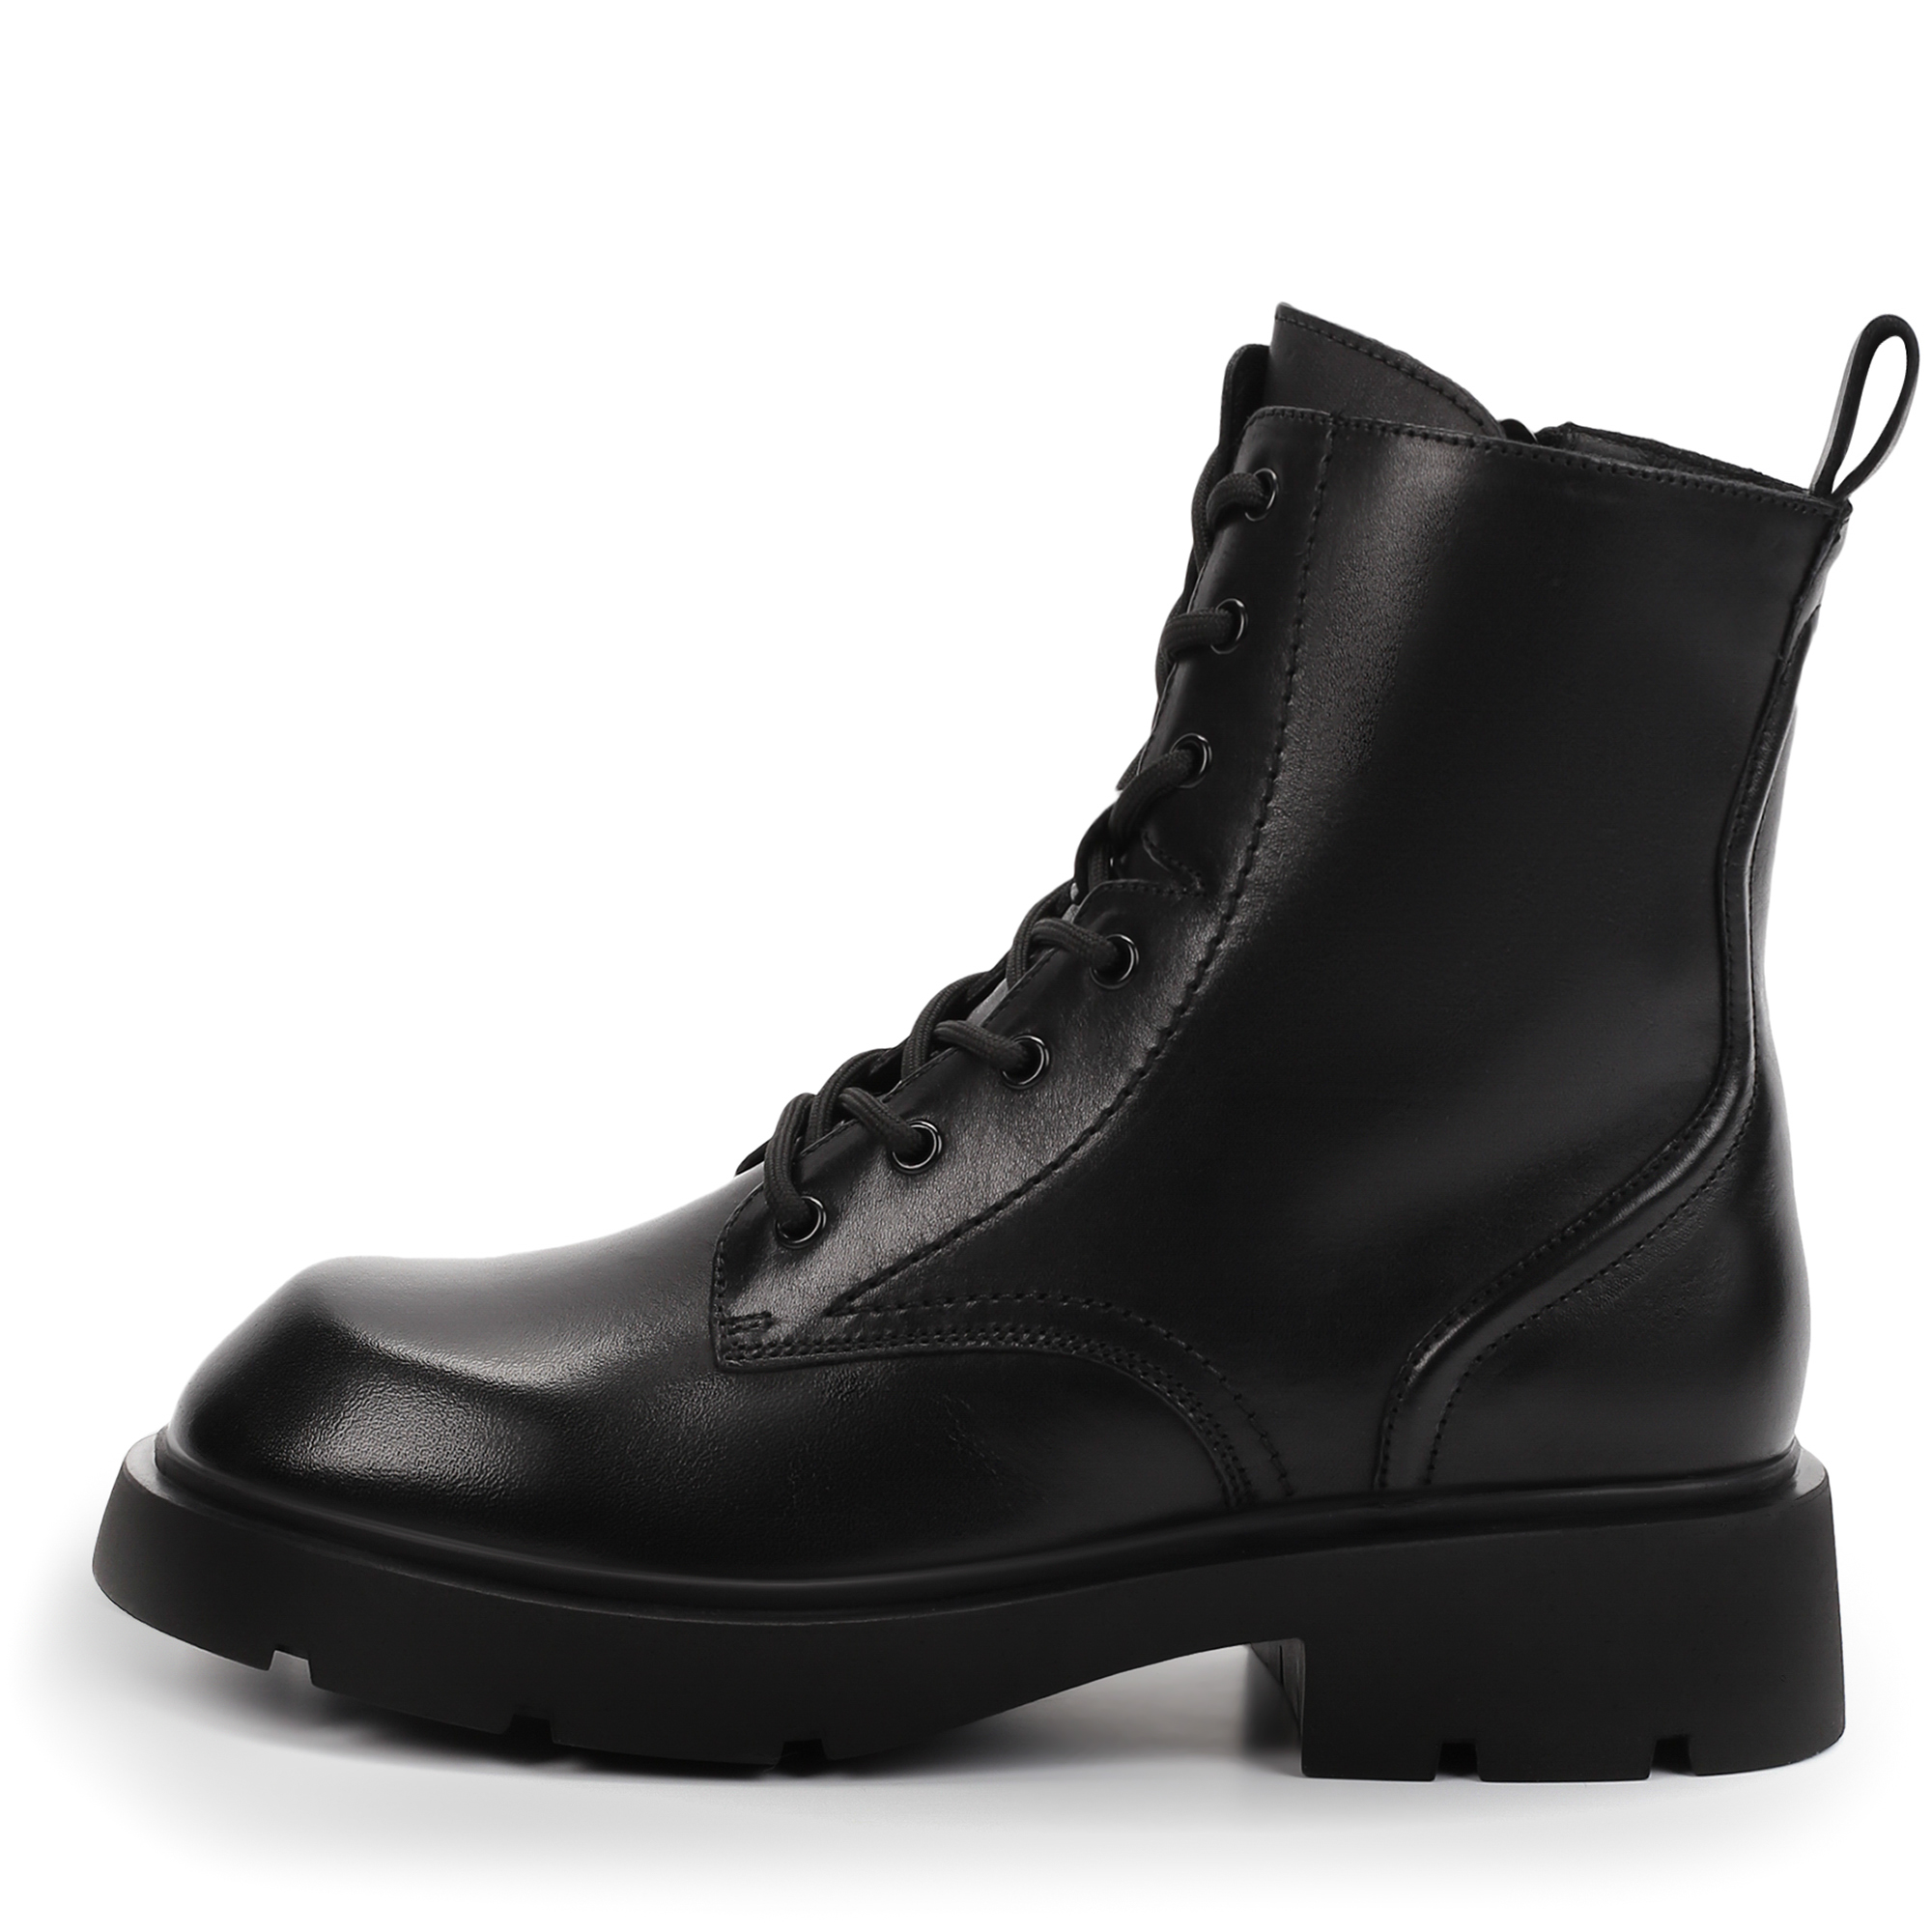 Ботинки Thomas Munz 058-3410A-2102, цвет черный, размер 37 - фото 1